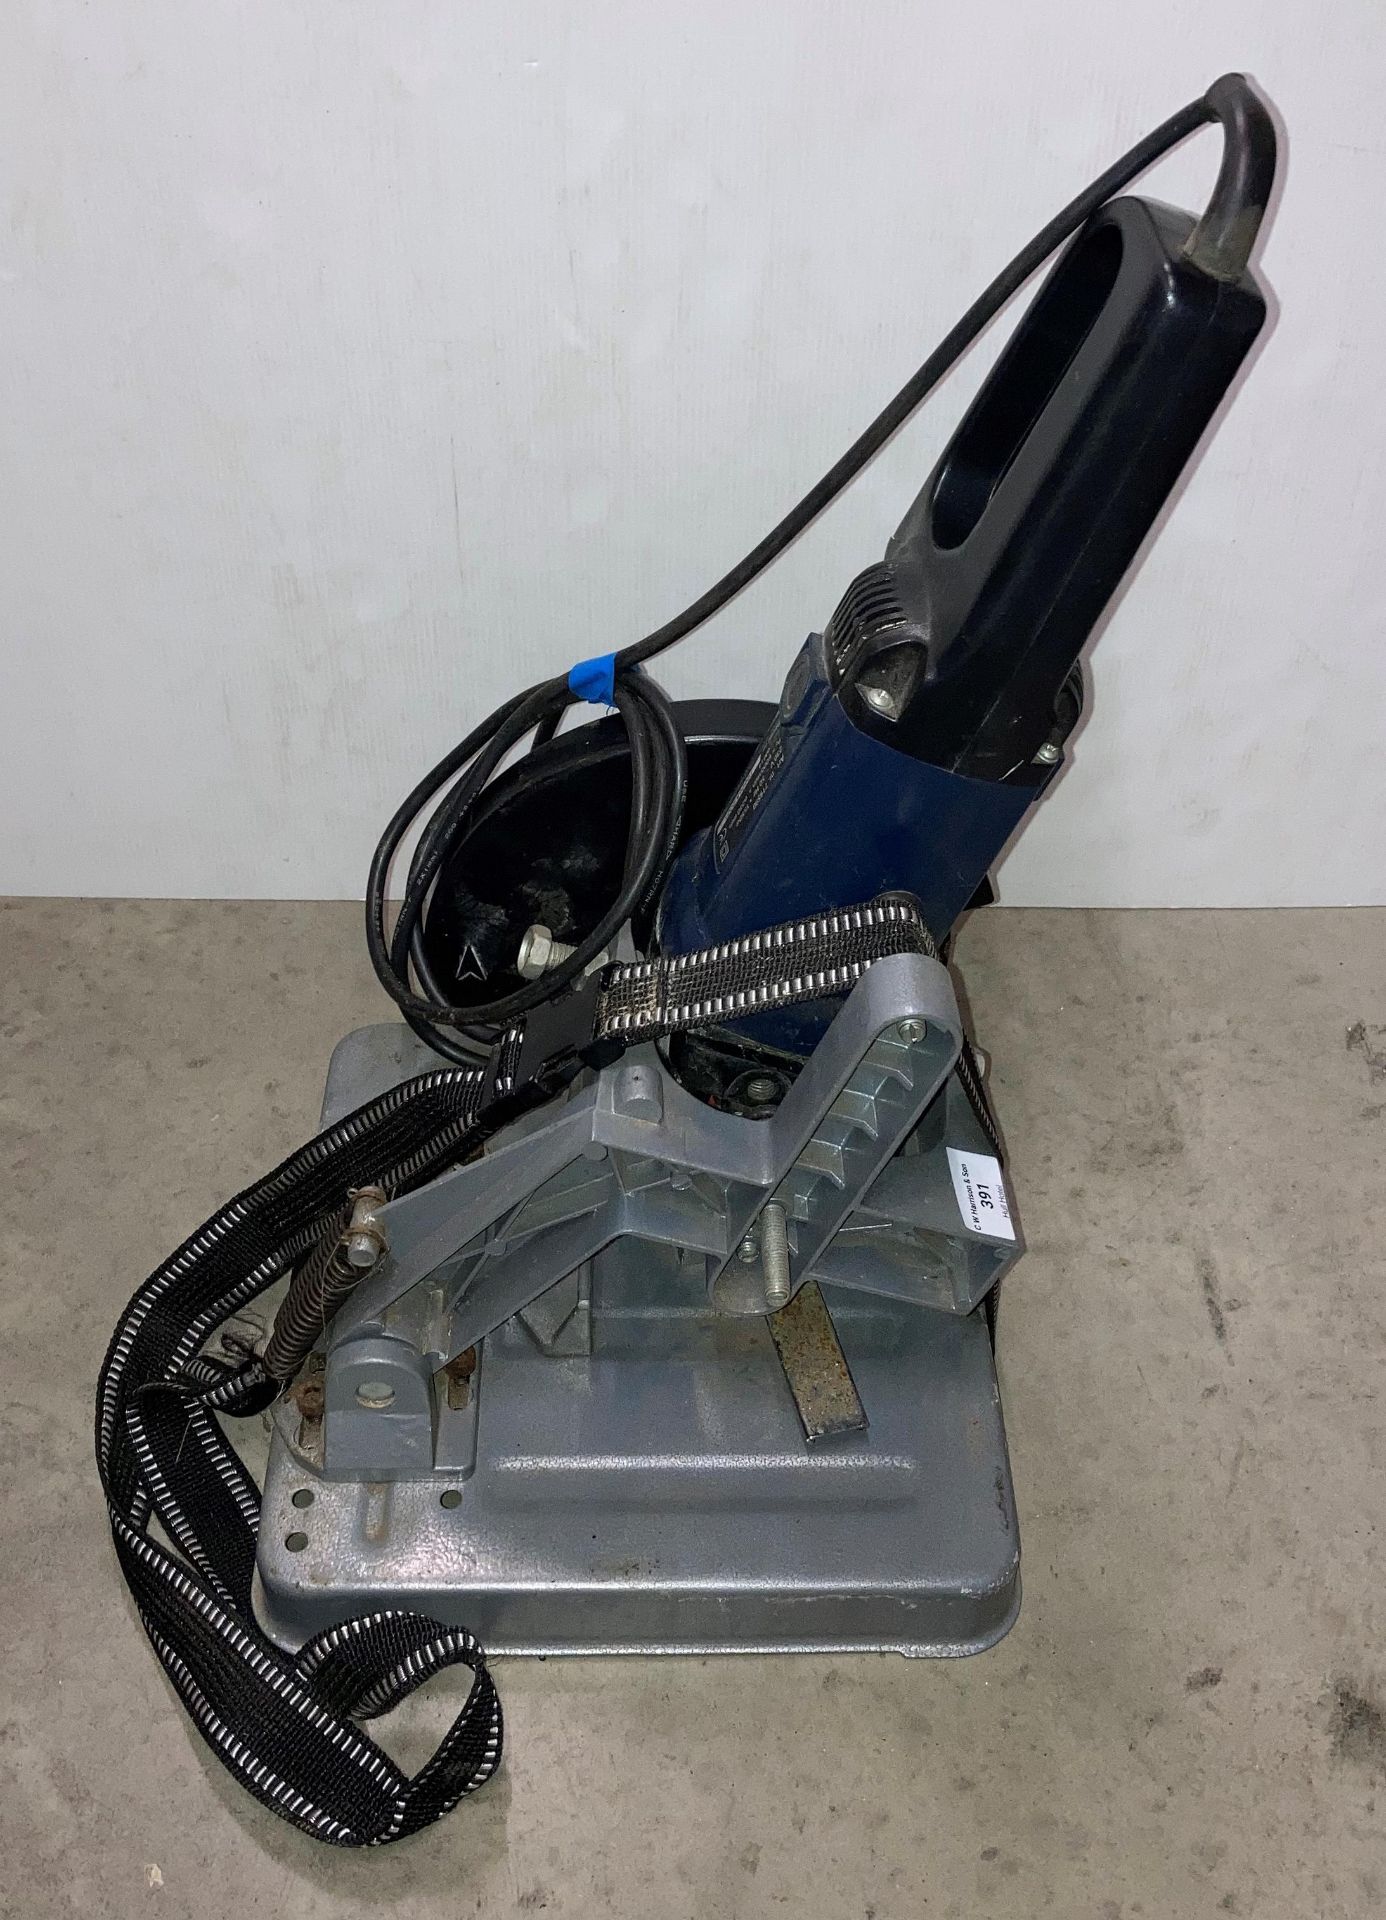 Ferm FAG-230 1550W (240v) angle grinder on chop base (saleroom location: P06-2) - Image 2 of 2